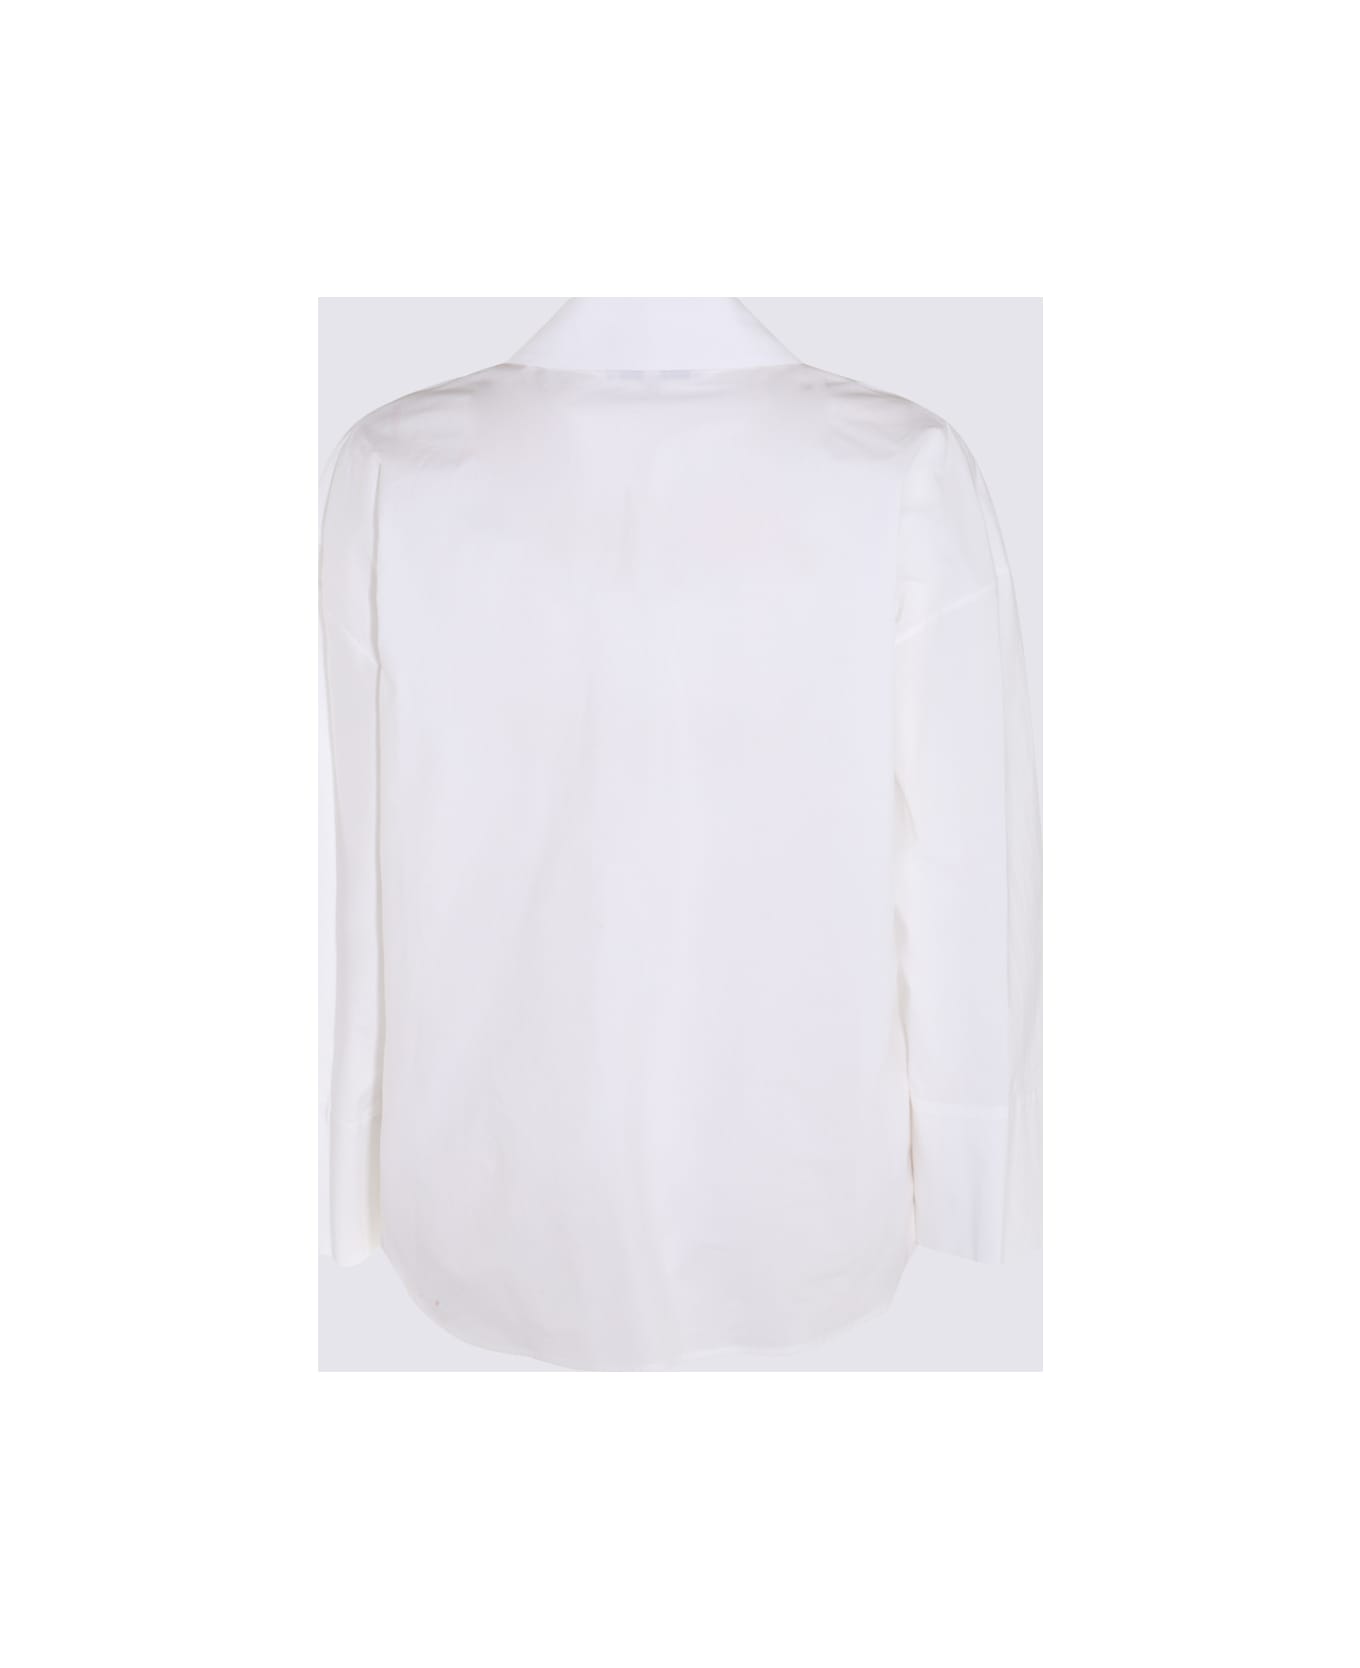 Antonelli White Cotton Shirt - White シャツ